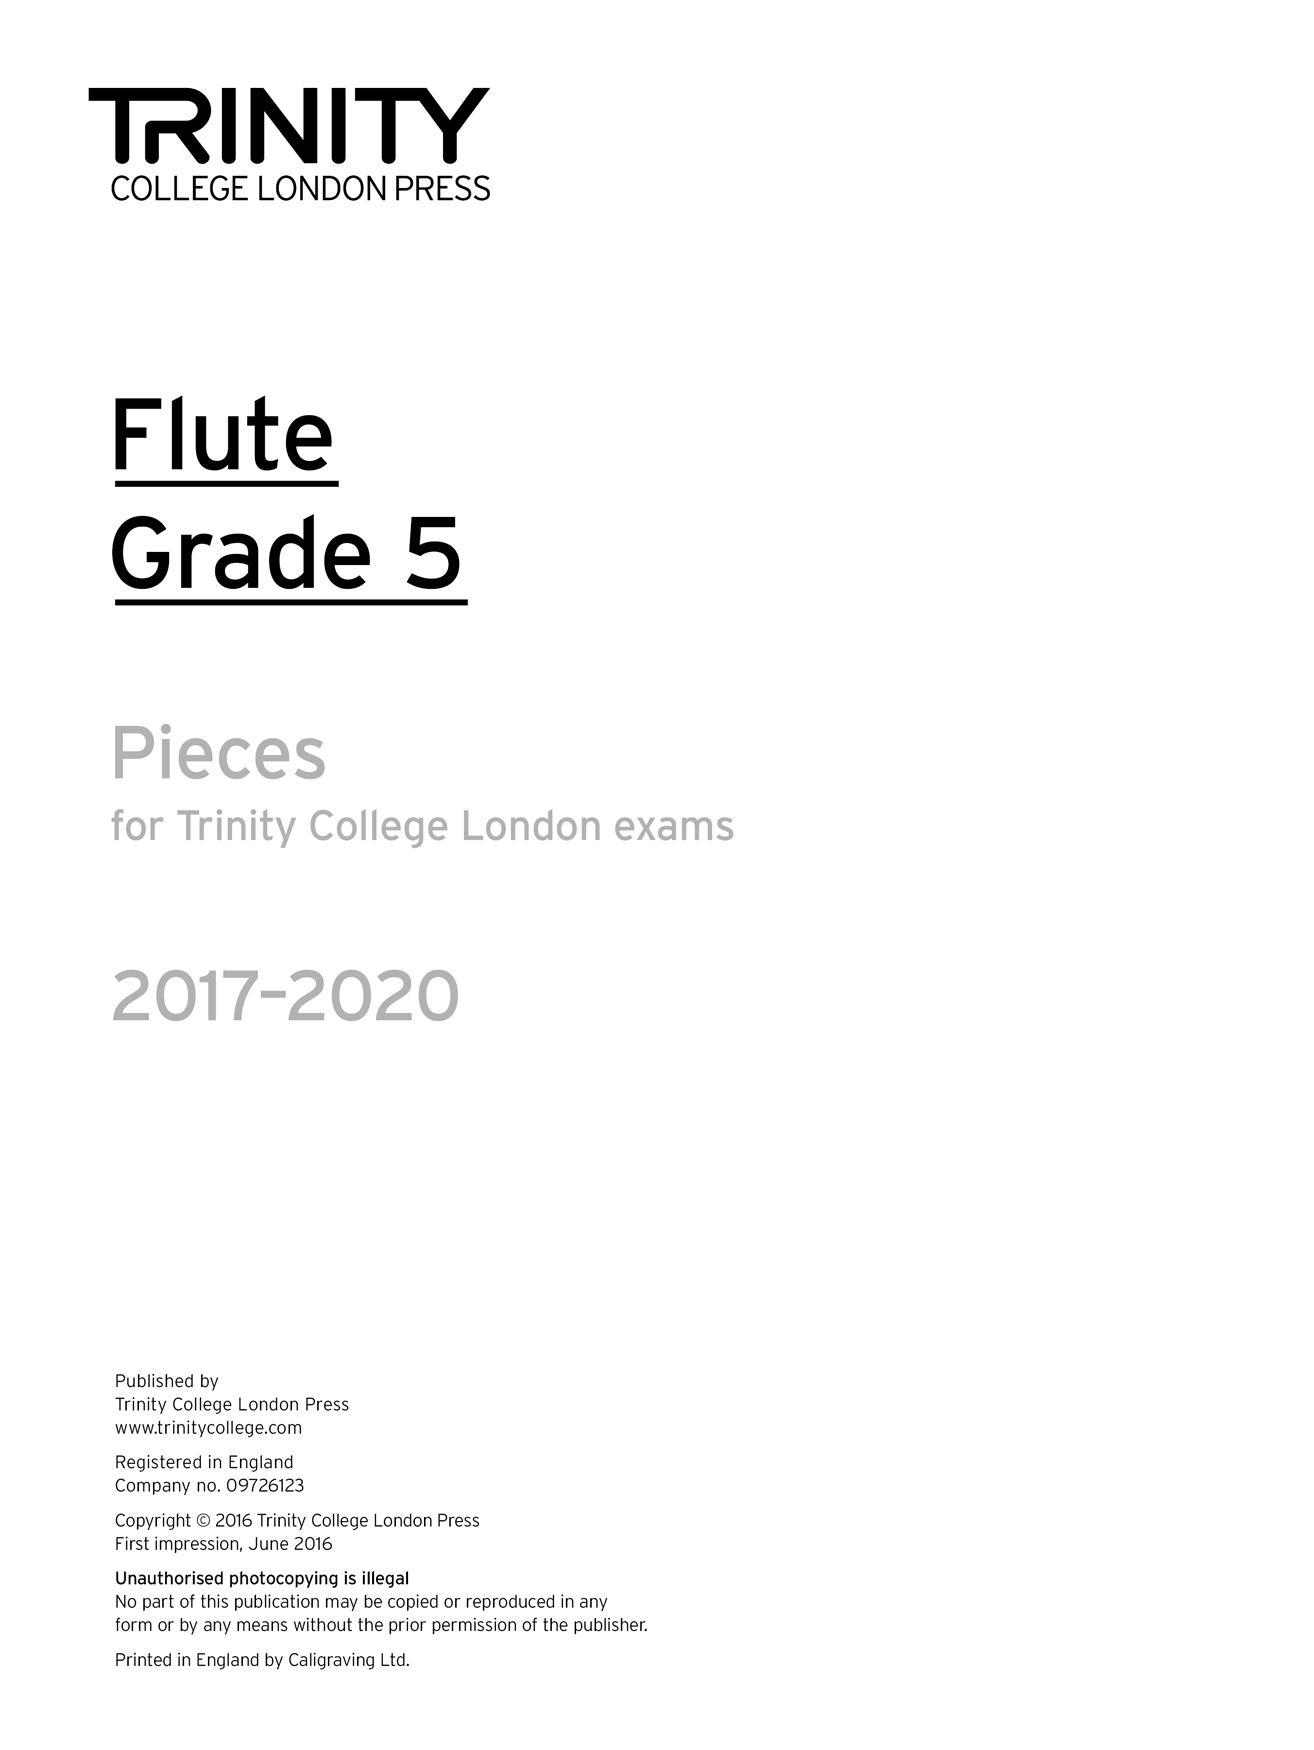 Flute Exam 2017-2020 - Grade 5: Flute: Part